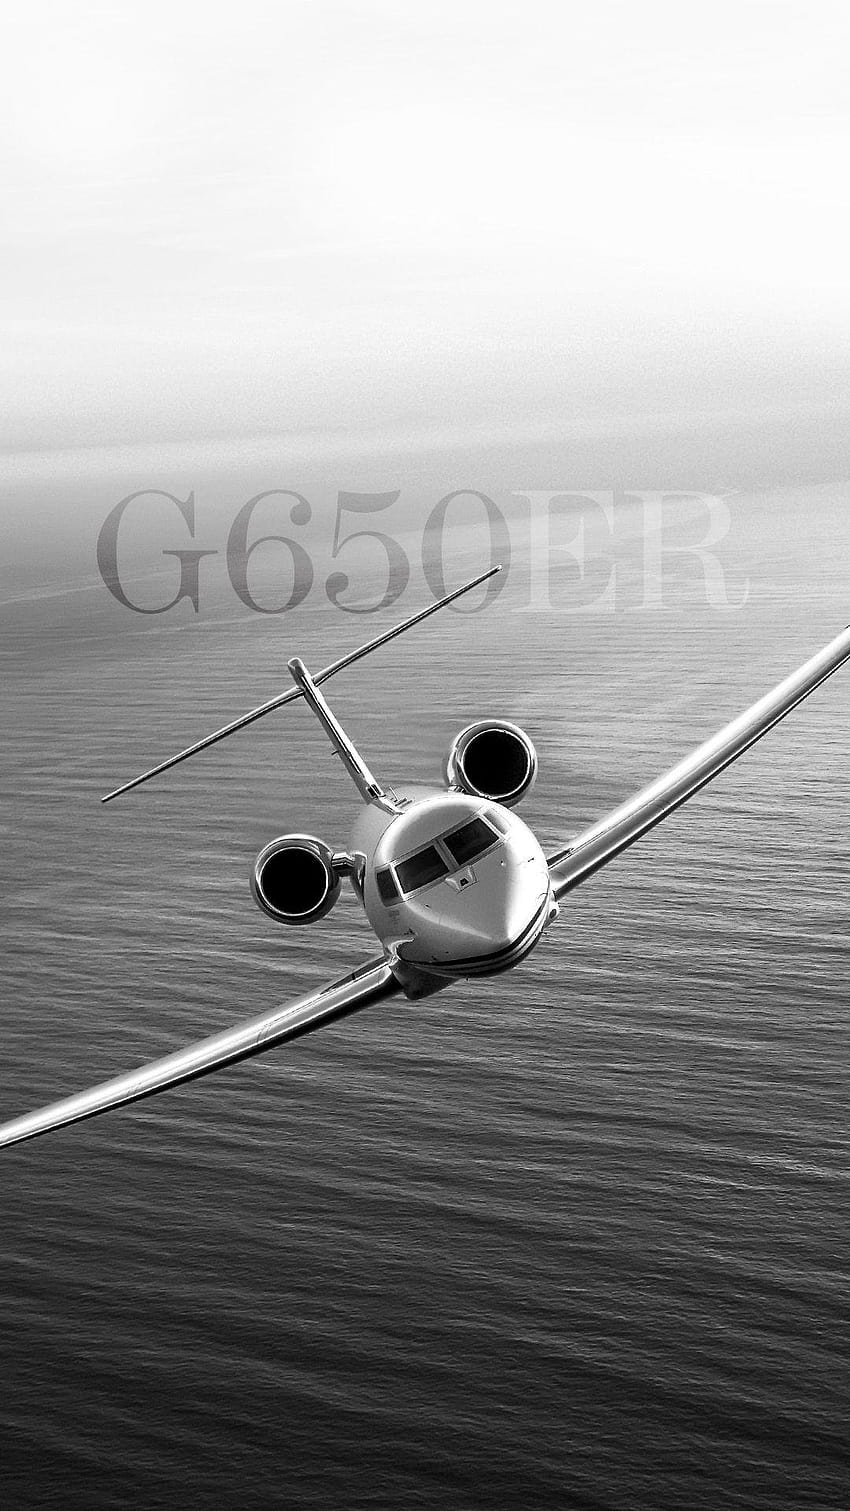 Gulfstream Aerospace, gulfstream g650 HD phone wallpaper